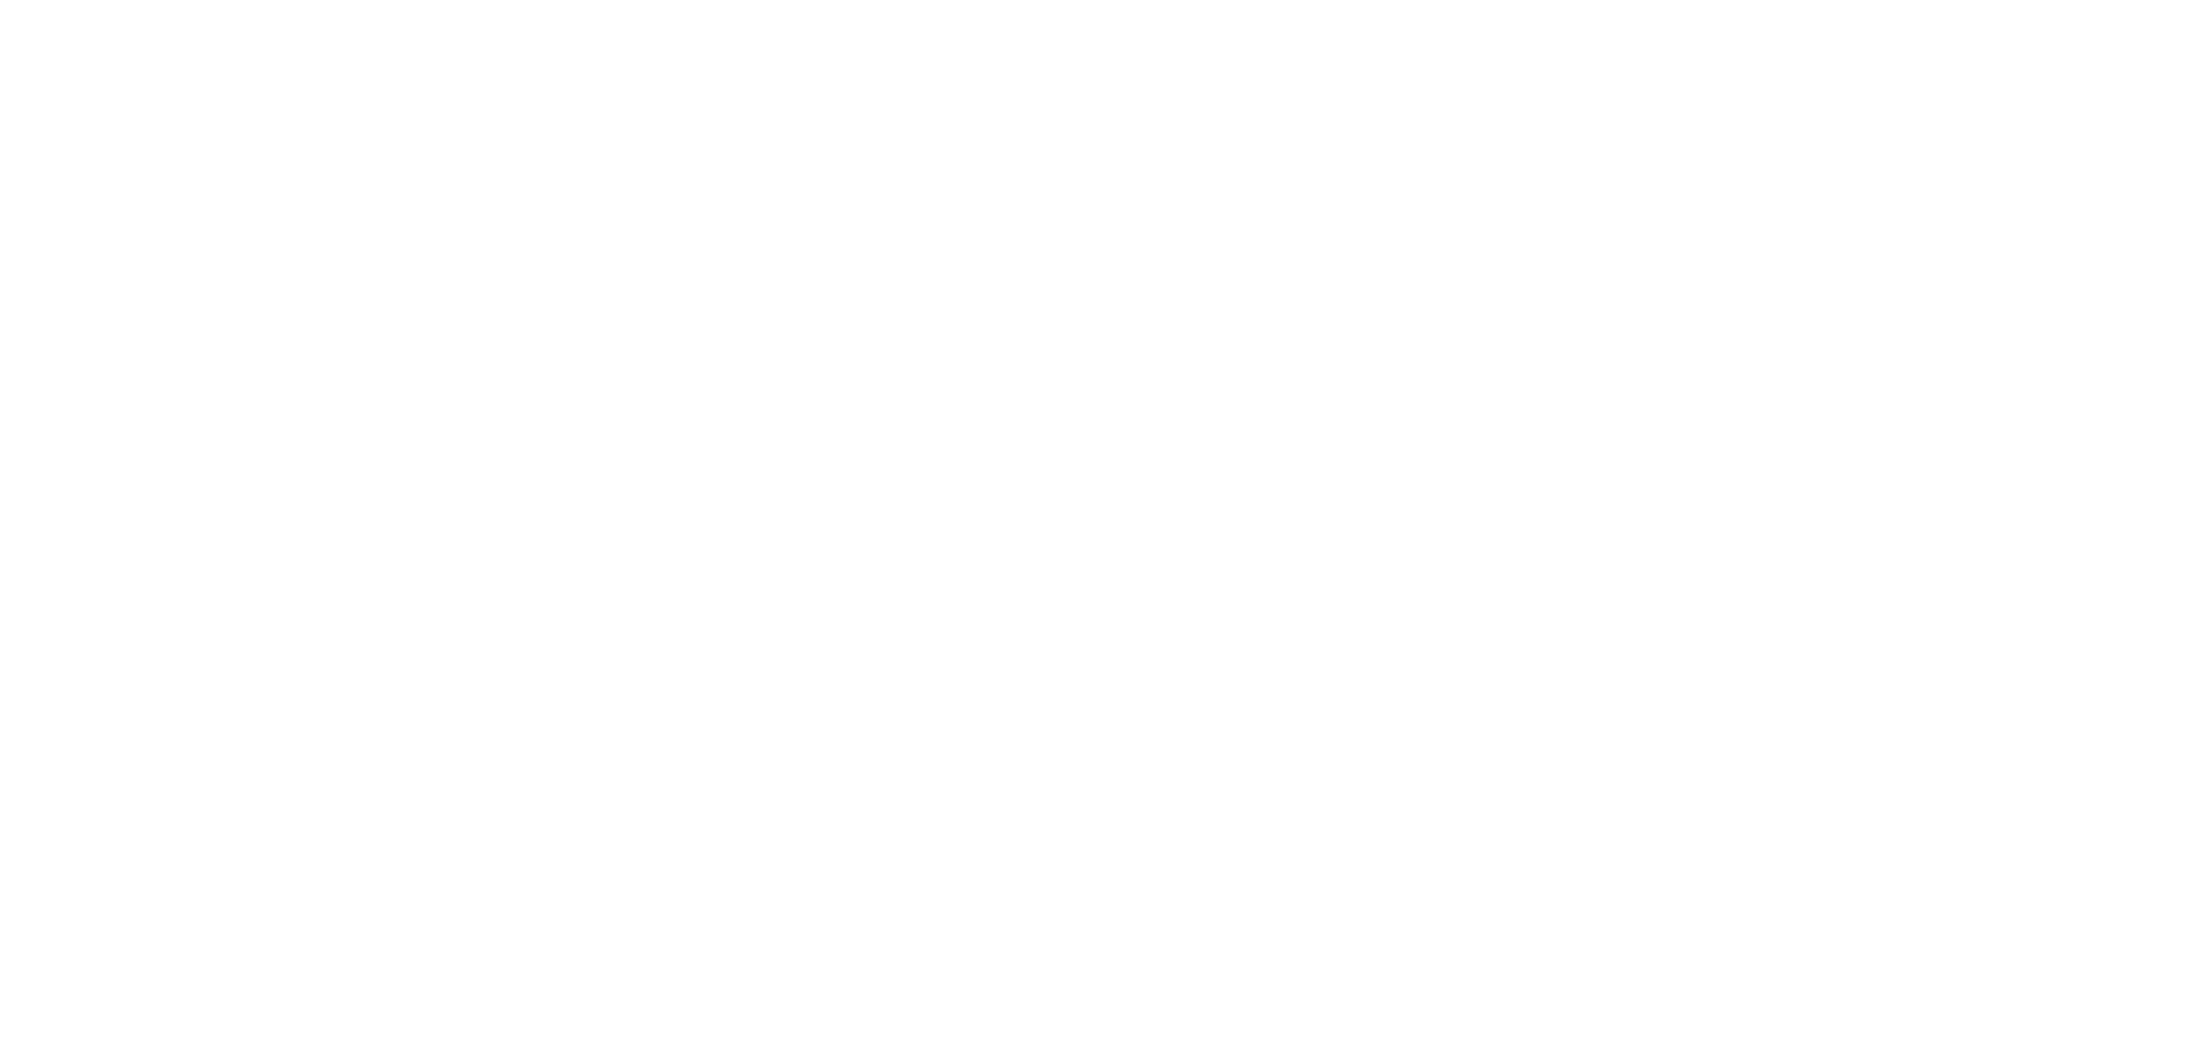 Robert's logo